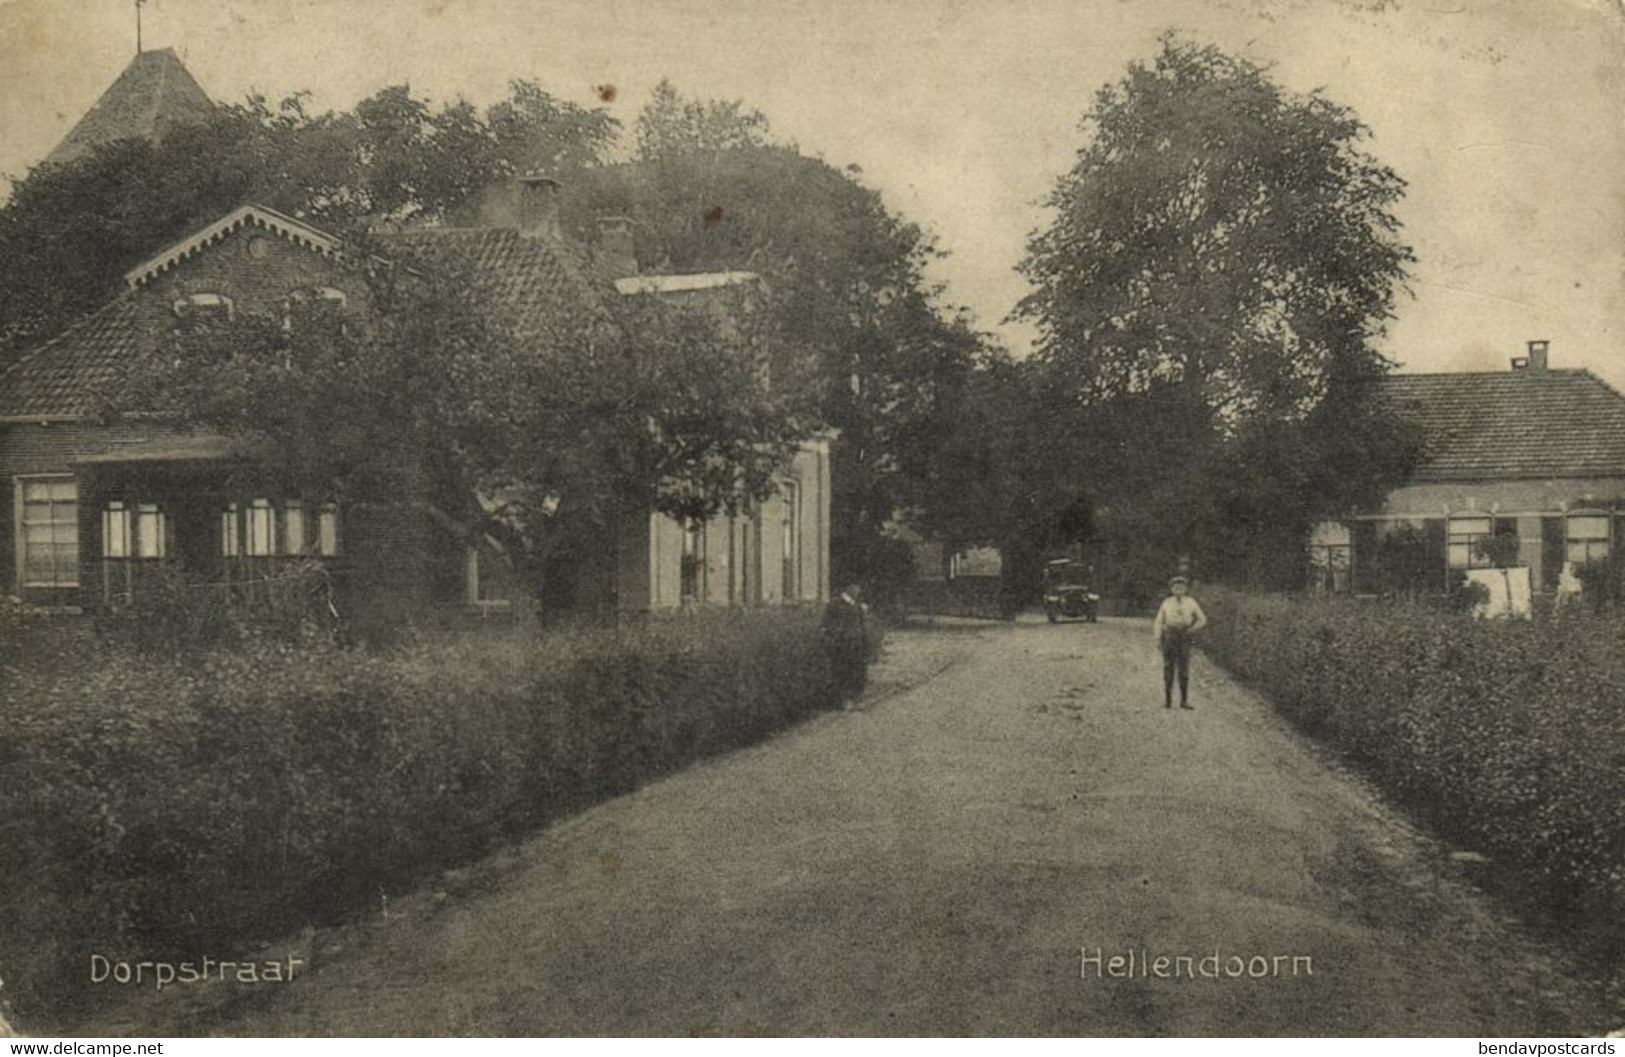 Nederland, HELLENDOORN, Dorpstraat (1916) Ansichtkaart - Hellendoorn